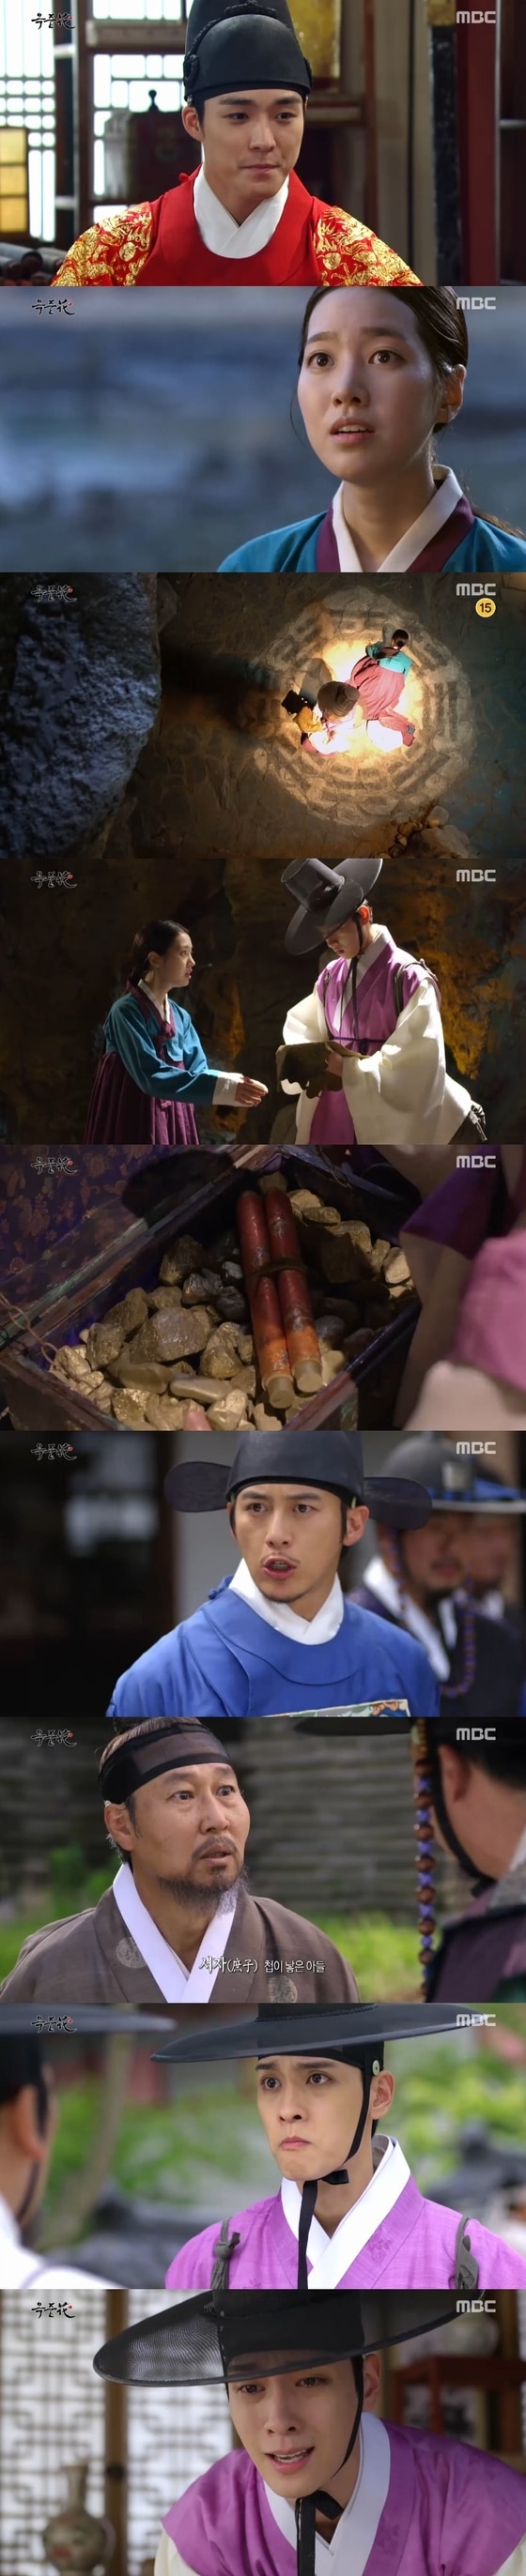 23일 밤 10시 MBC 주말드라마 '옥중화' 24회가 방송됐다. © News1star / MBC '옥중화' 캡처